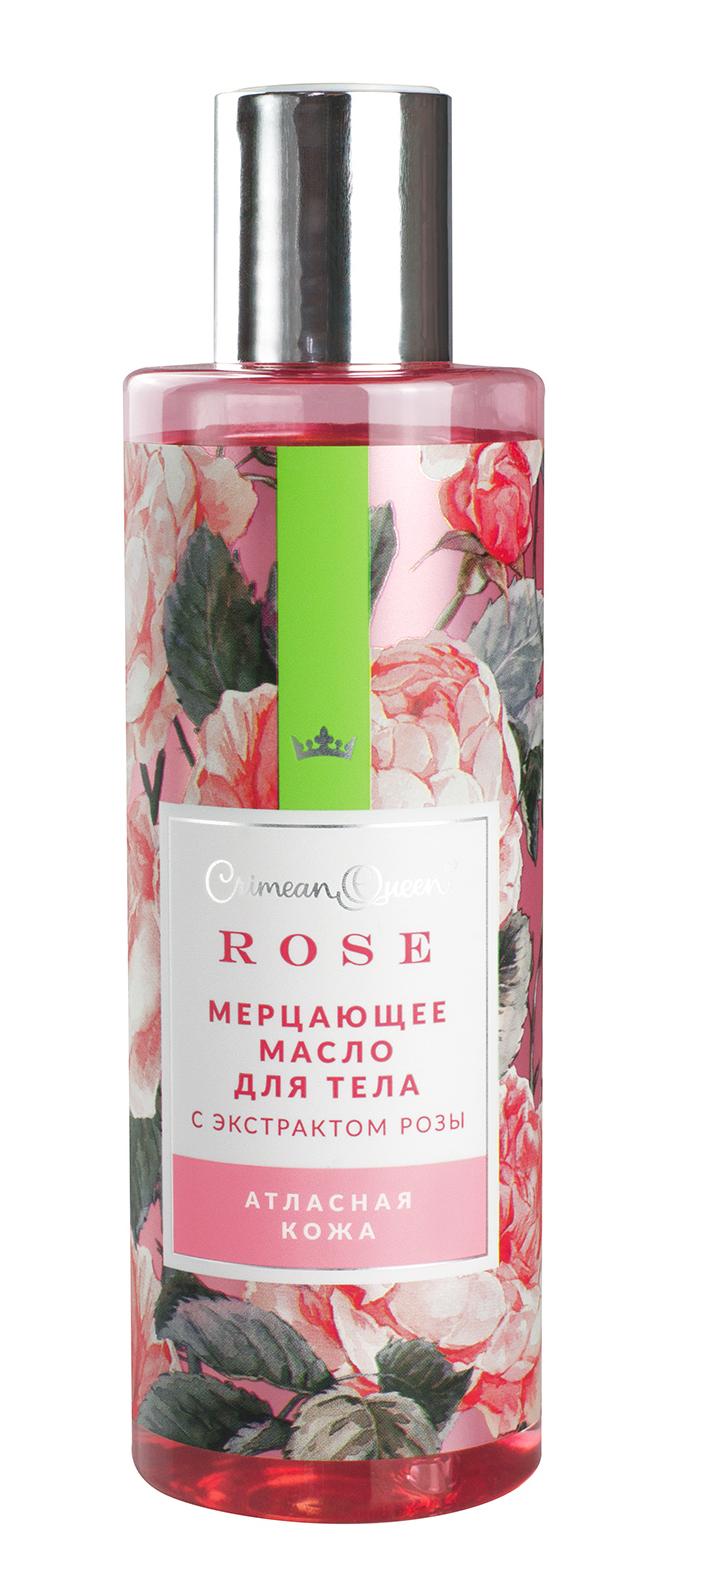 Мерцающее масло для тела с экстрактом розы Атласная кожа, 170г купить в онлайн экомаркете